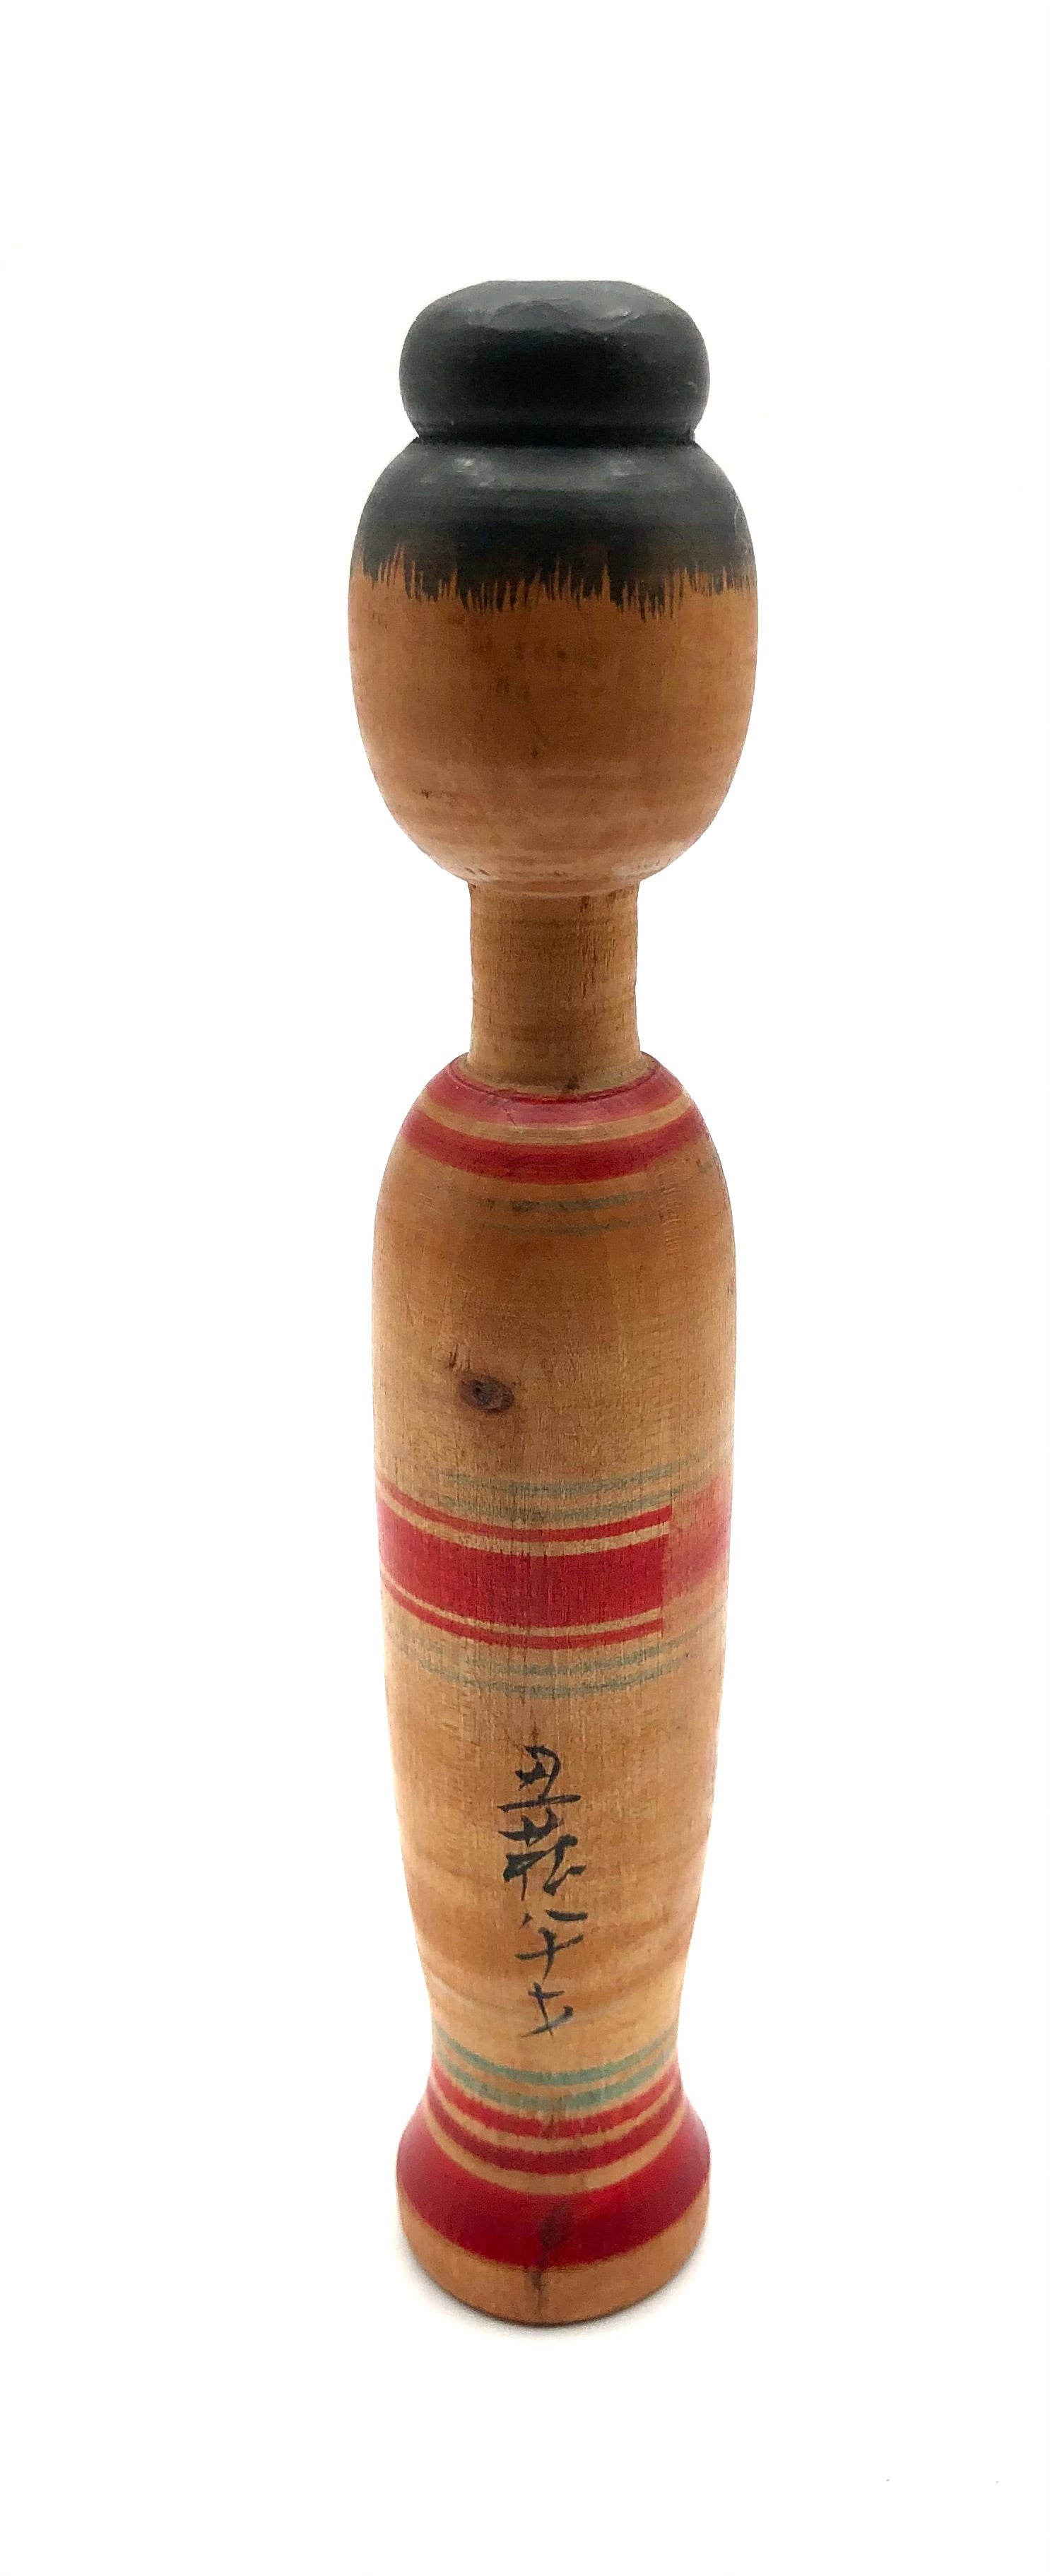 Vintage Japanese Tougatta-kei Kokeshi Whistle by Sato, Ushizo (1889-1986)